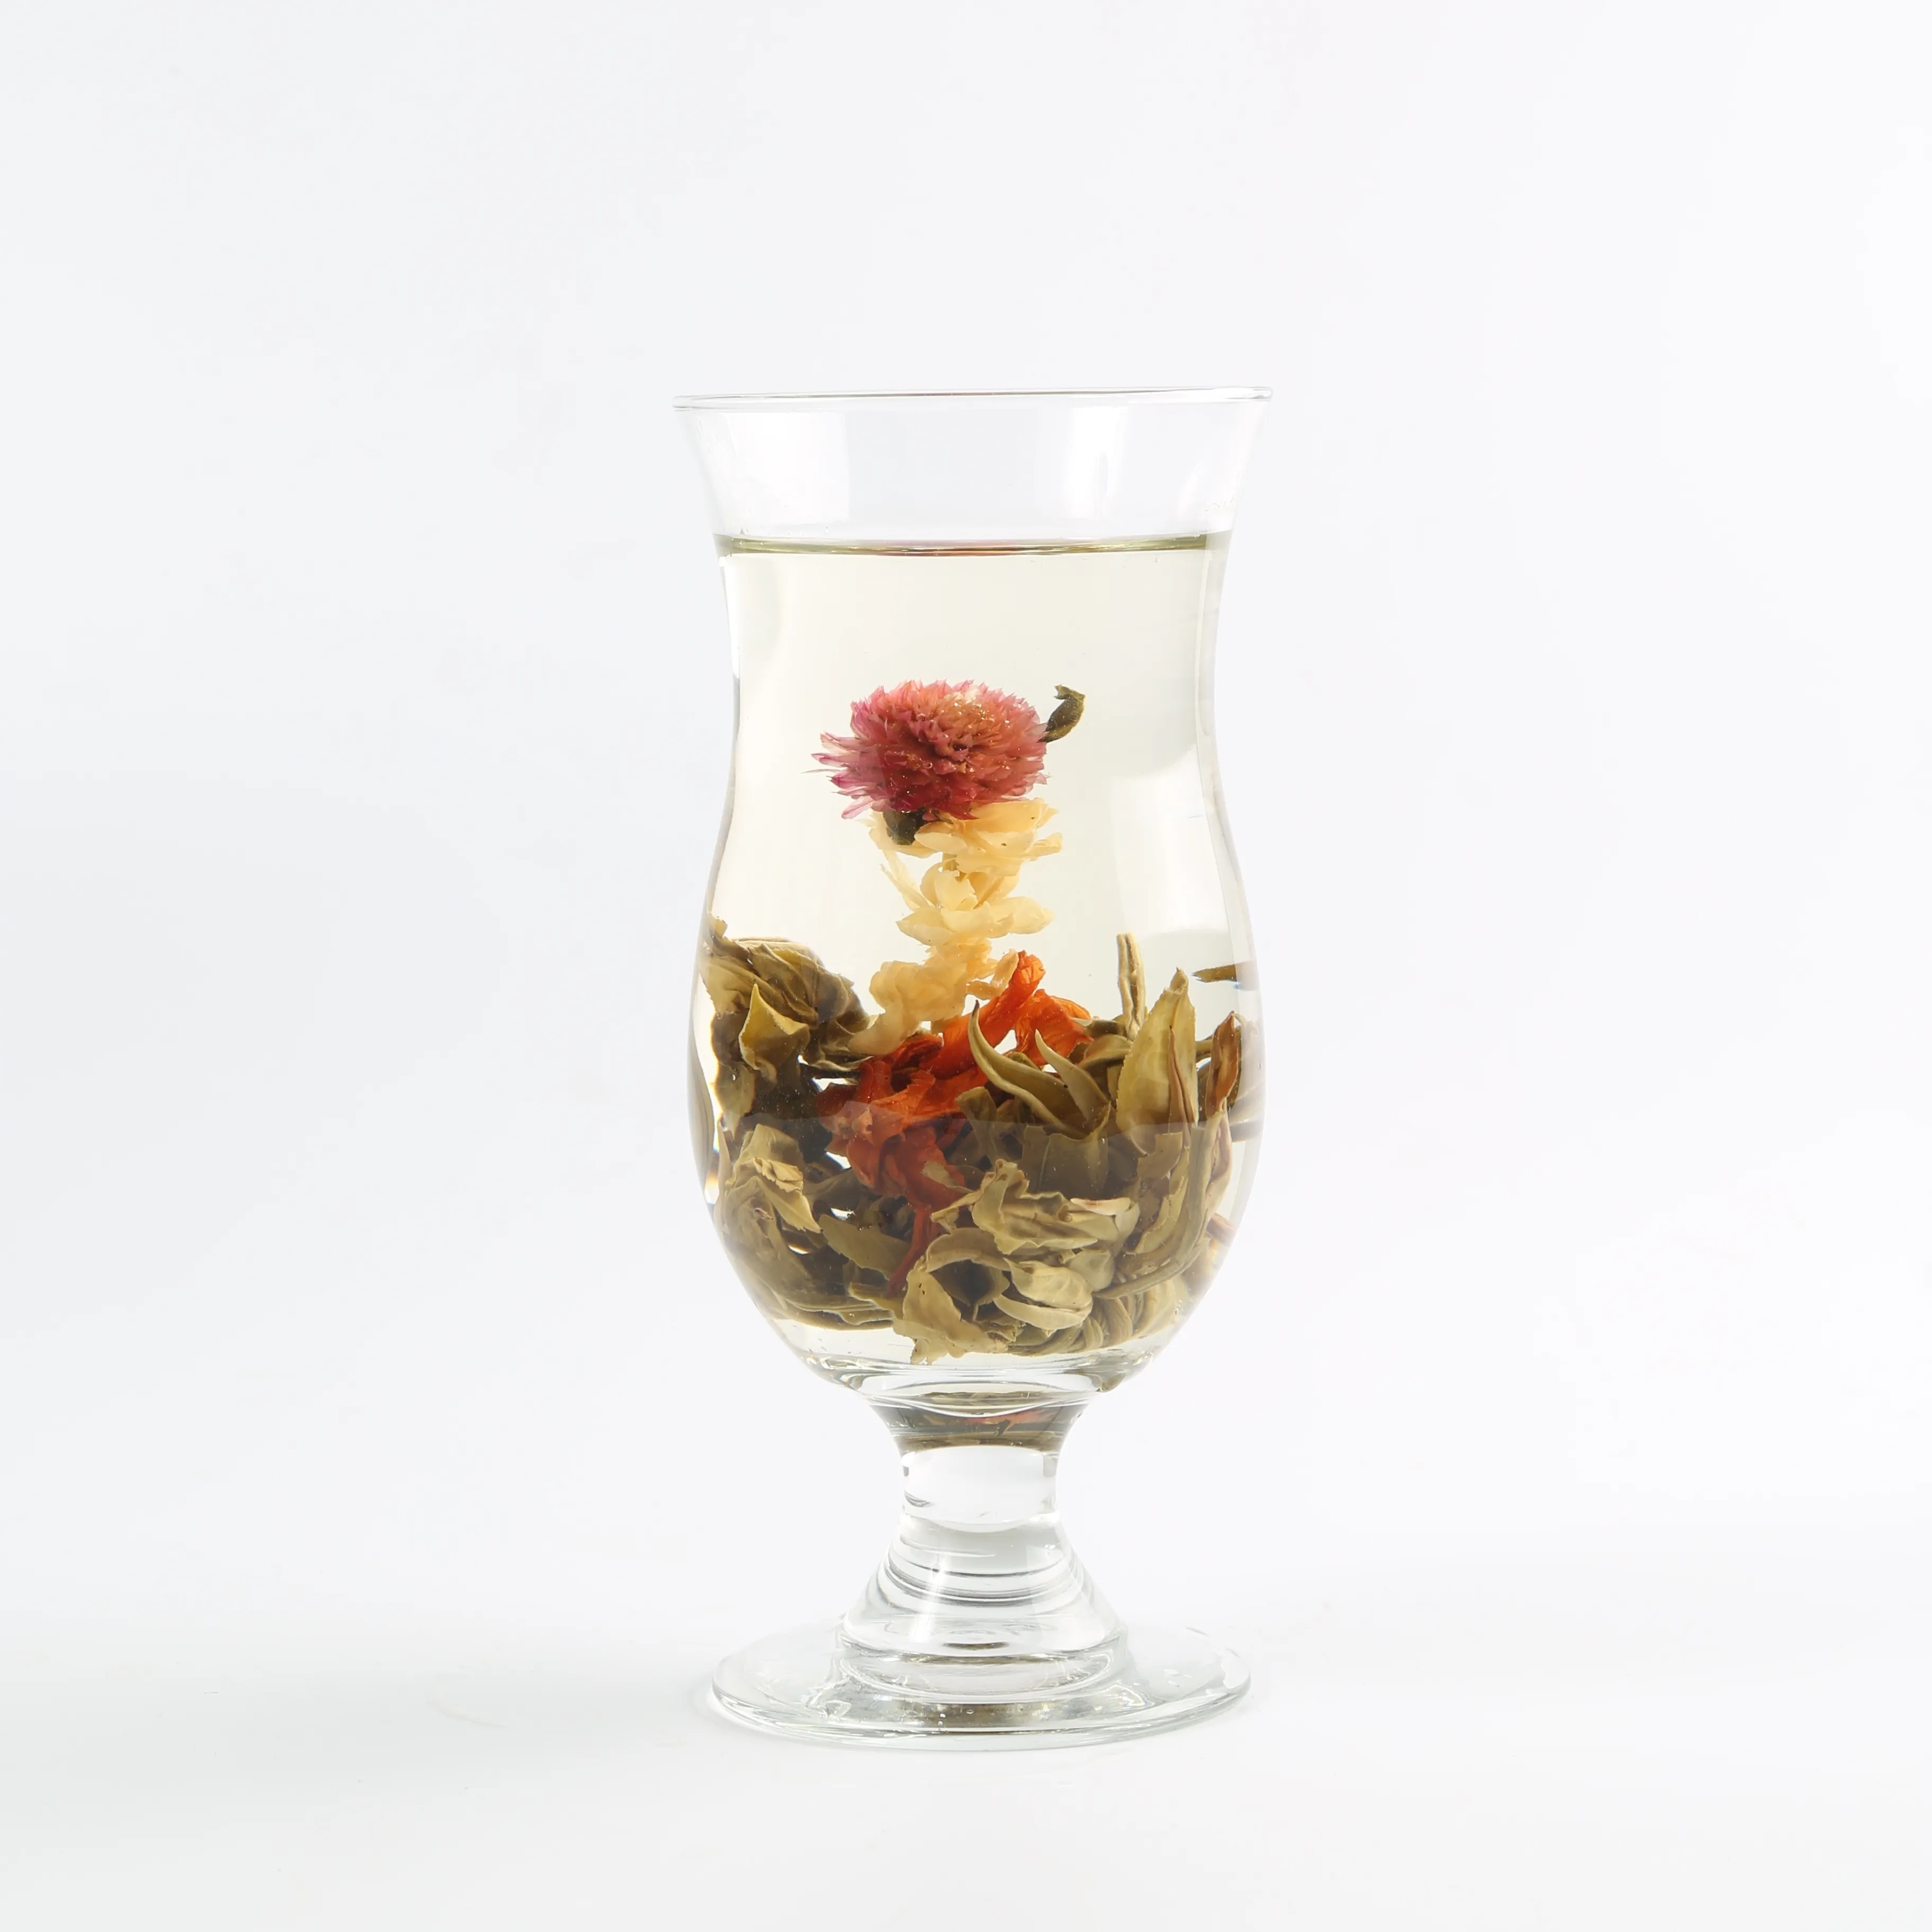 Tè alle erbe in fiore per la salute cinese tè biologico al crisantemo con fiori naturali